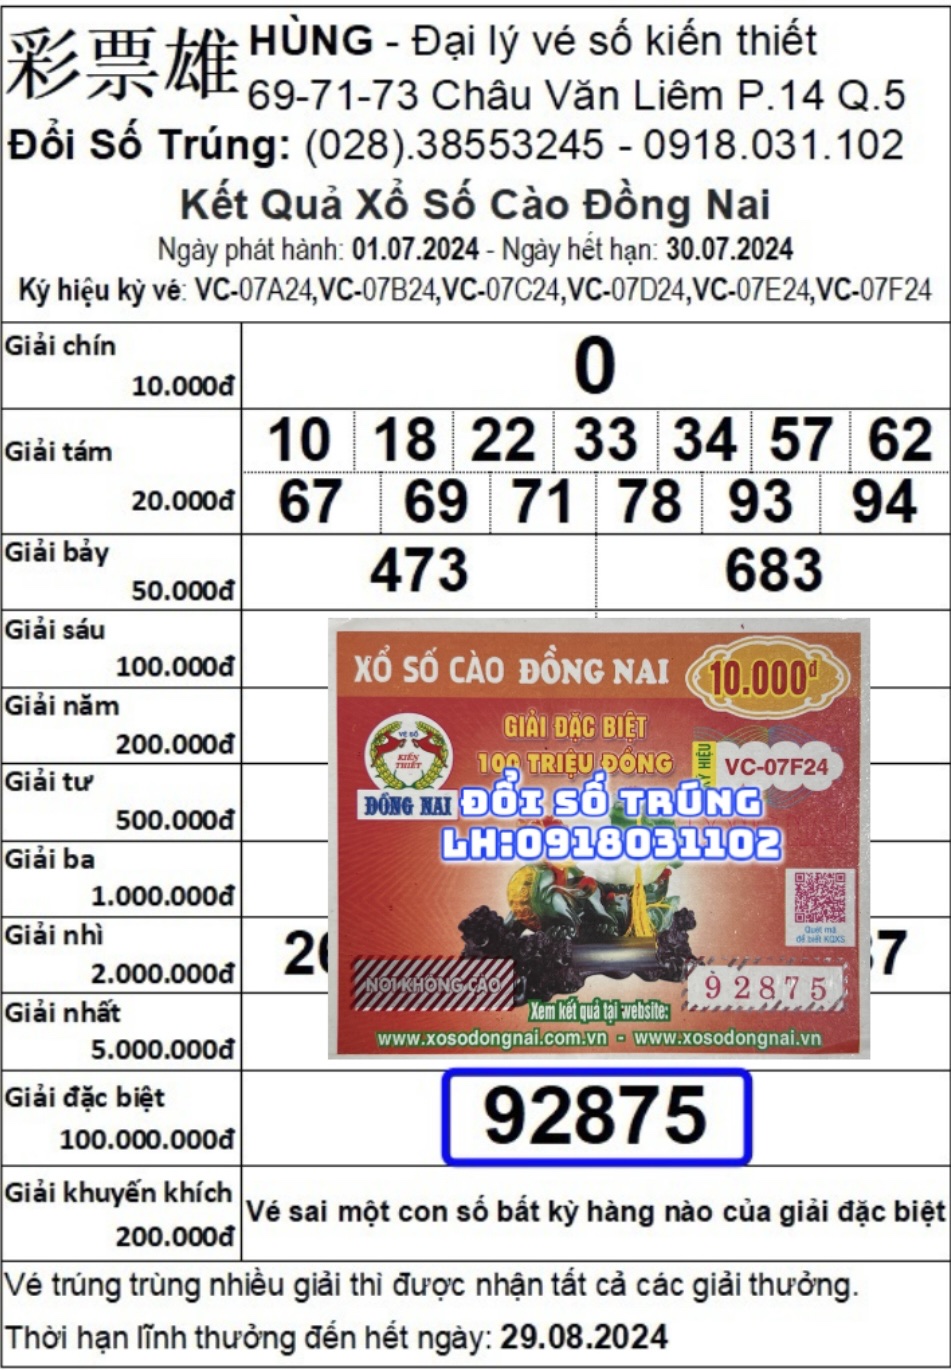 Xổ Số Cào Đồng Nai Kỳ vé:VC-07F24